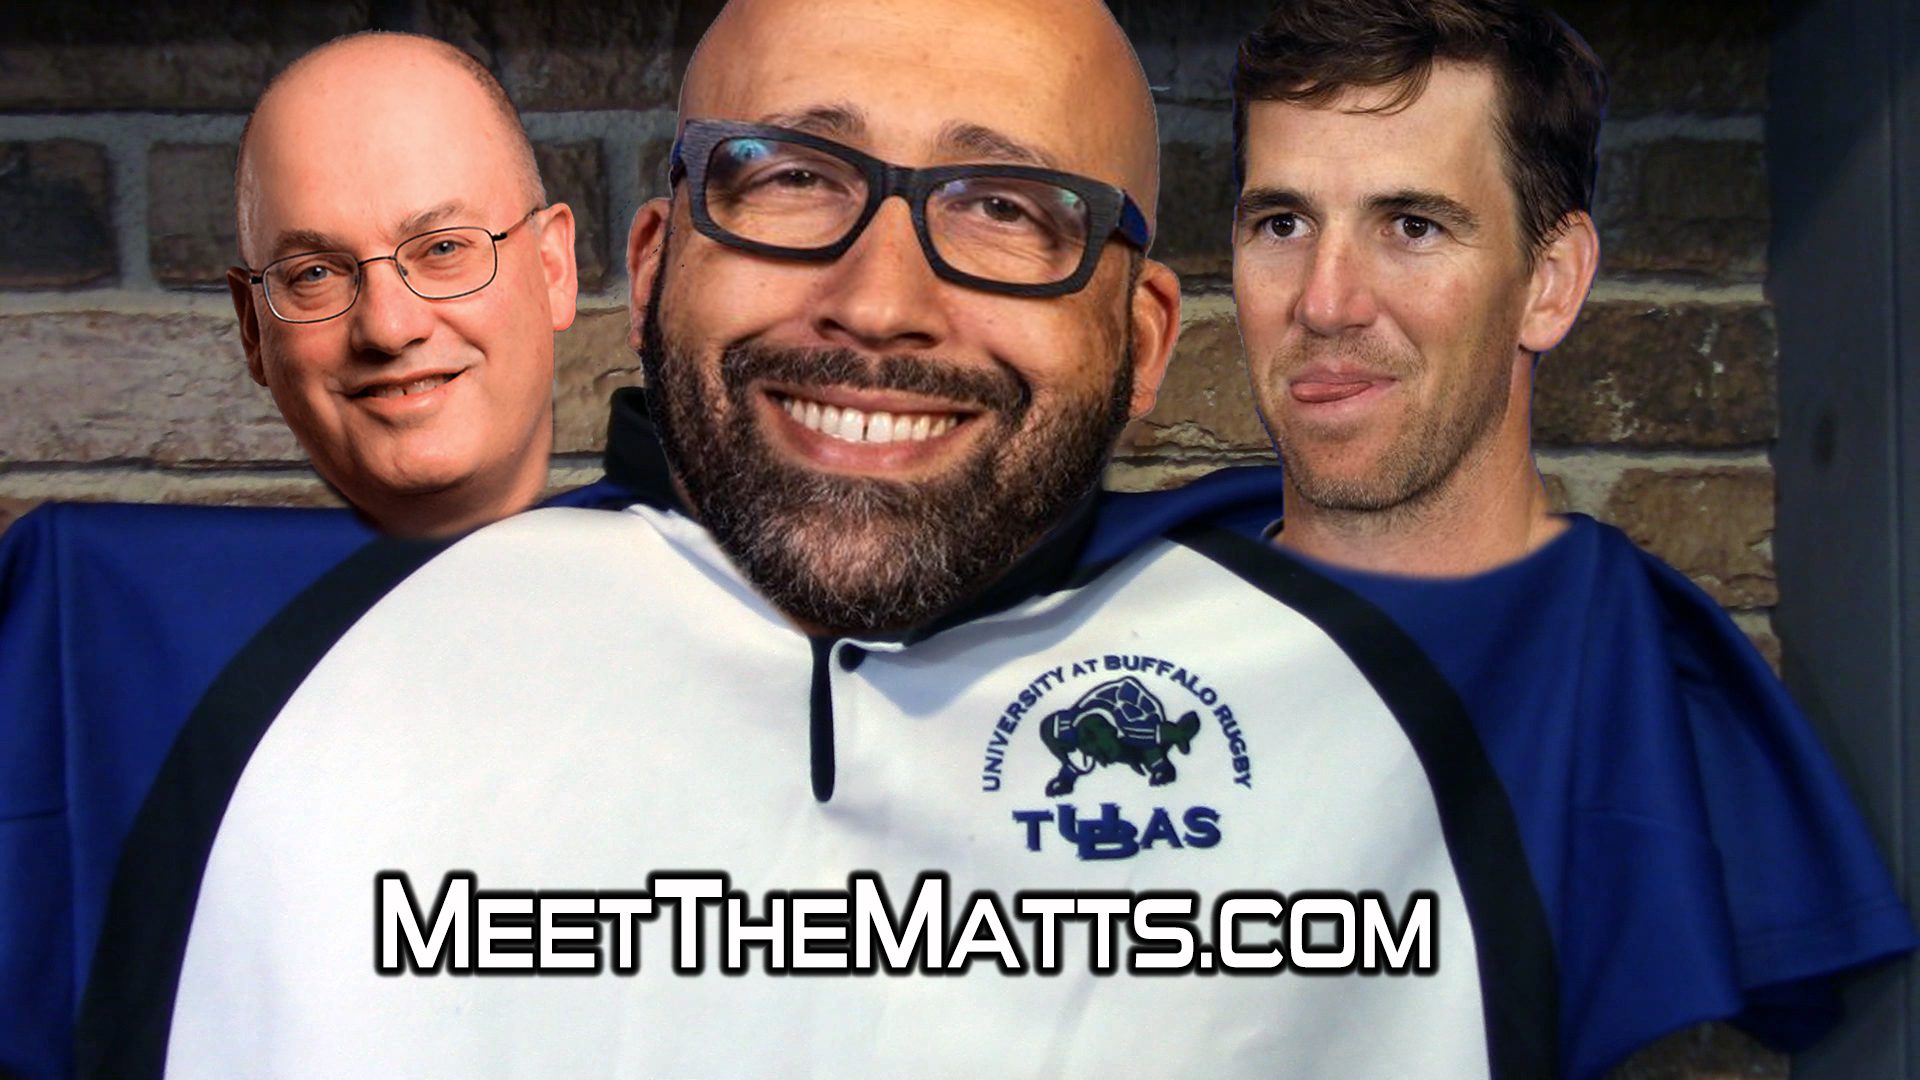 Steve_Cohen, David_Fizdale, Knicks, Eli_Manning, Meet_The_Matts, Matt_McCarthy